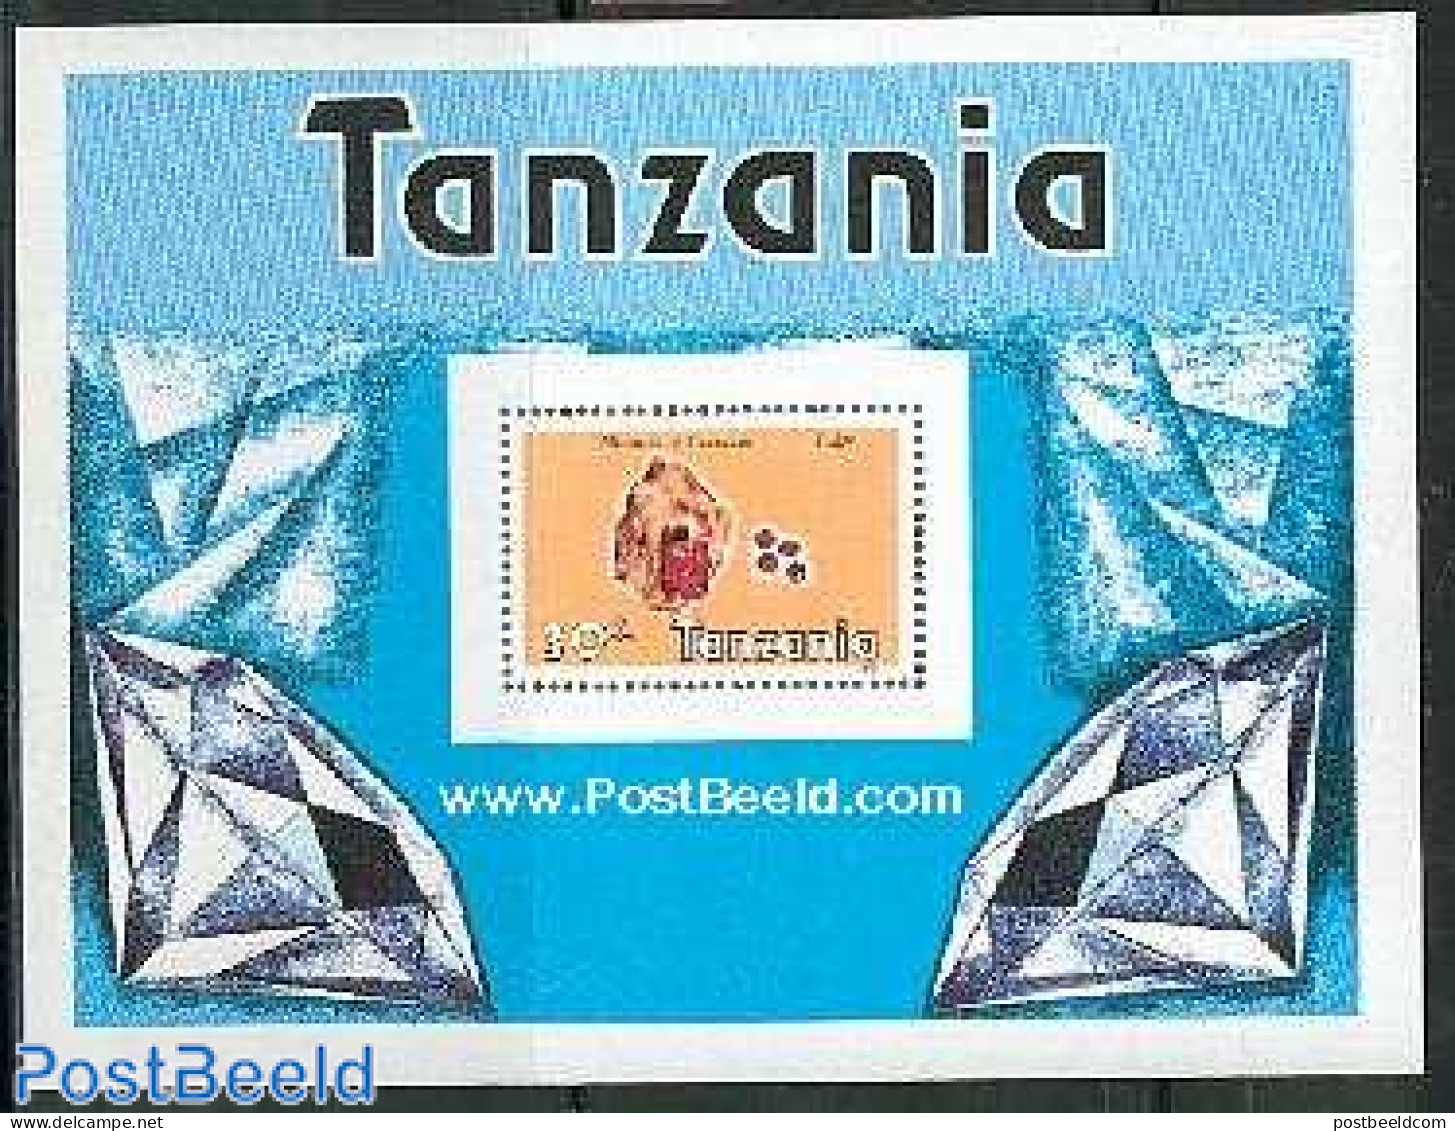 Tanzania 1986 Minerals S/s, Mint NH, History - Geology - Tanzanie (1964-...)